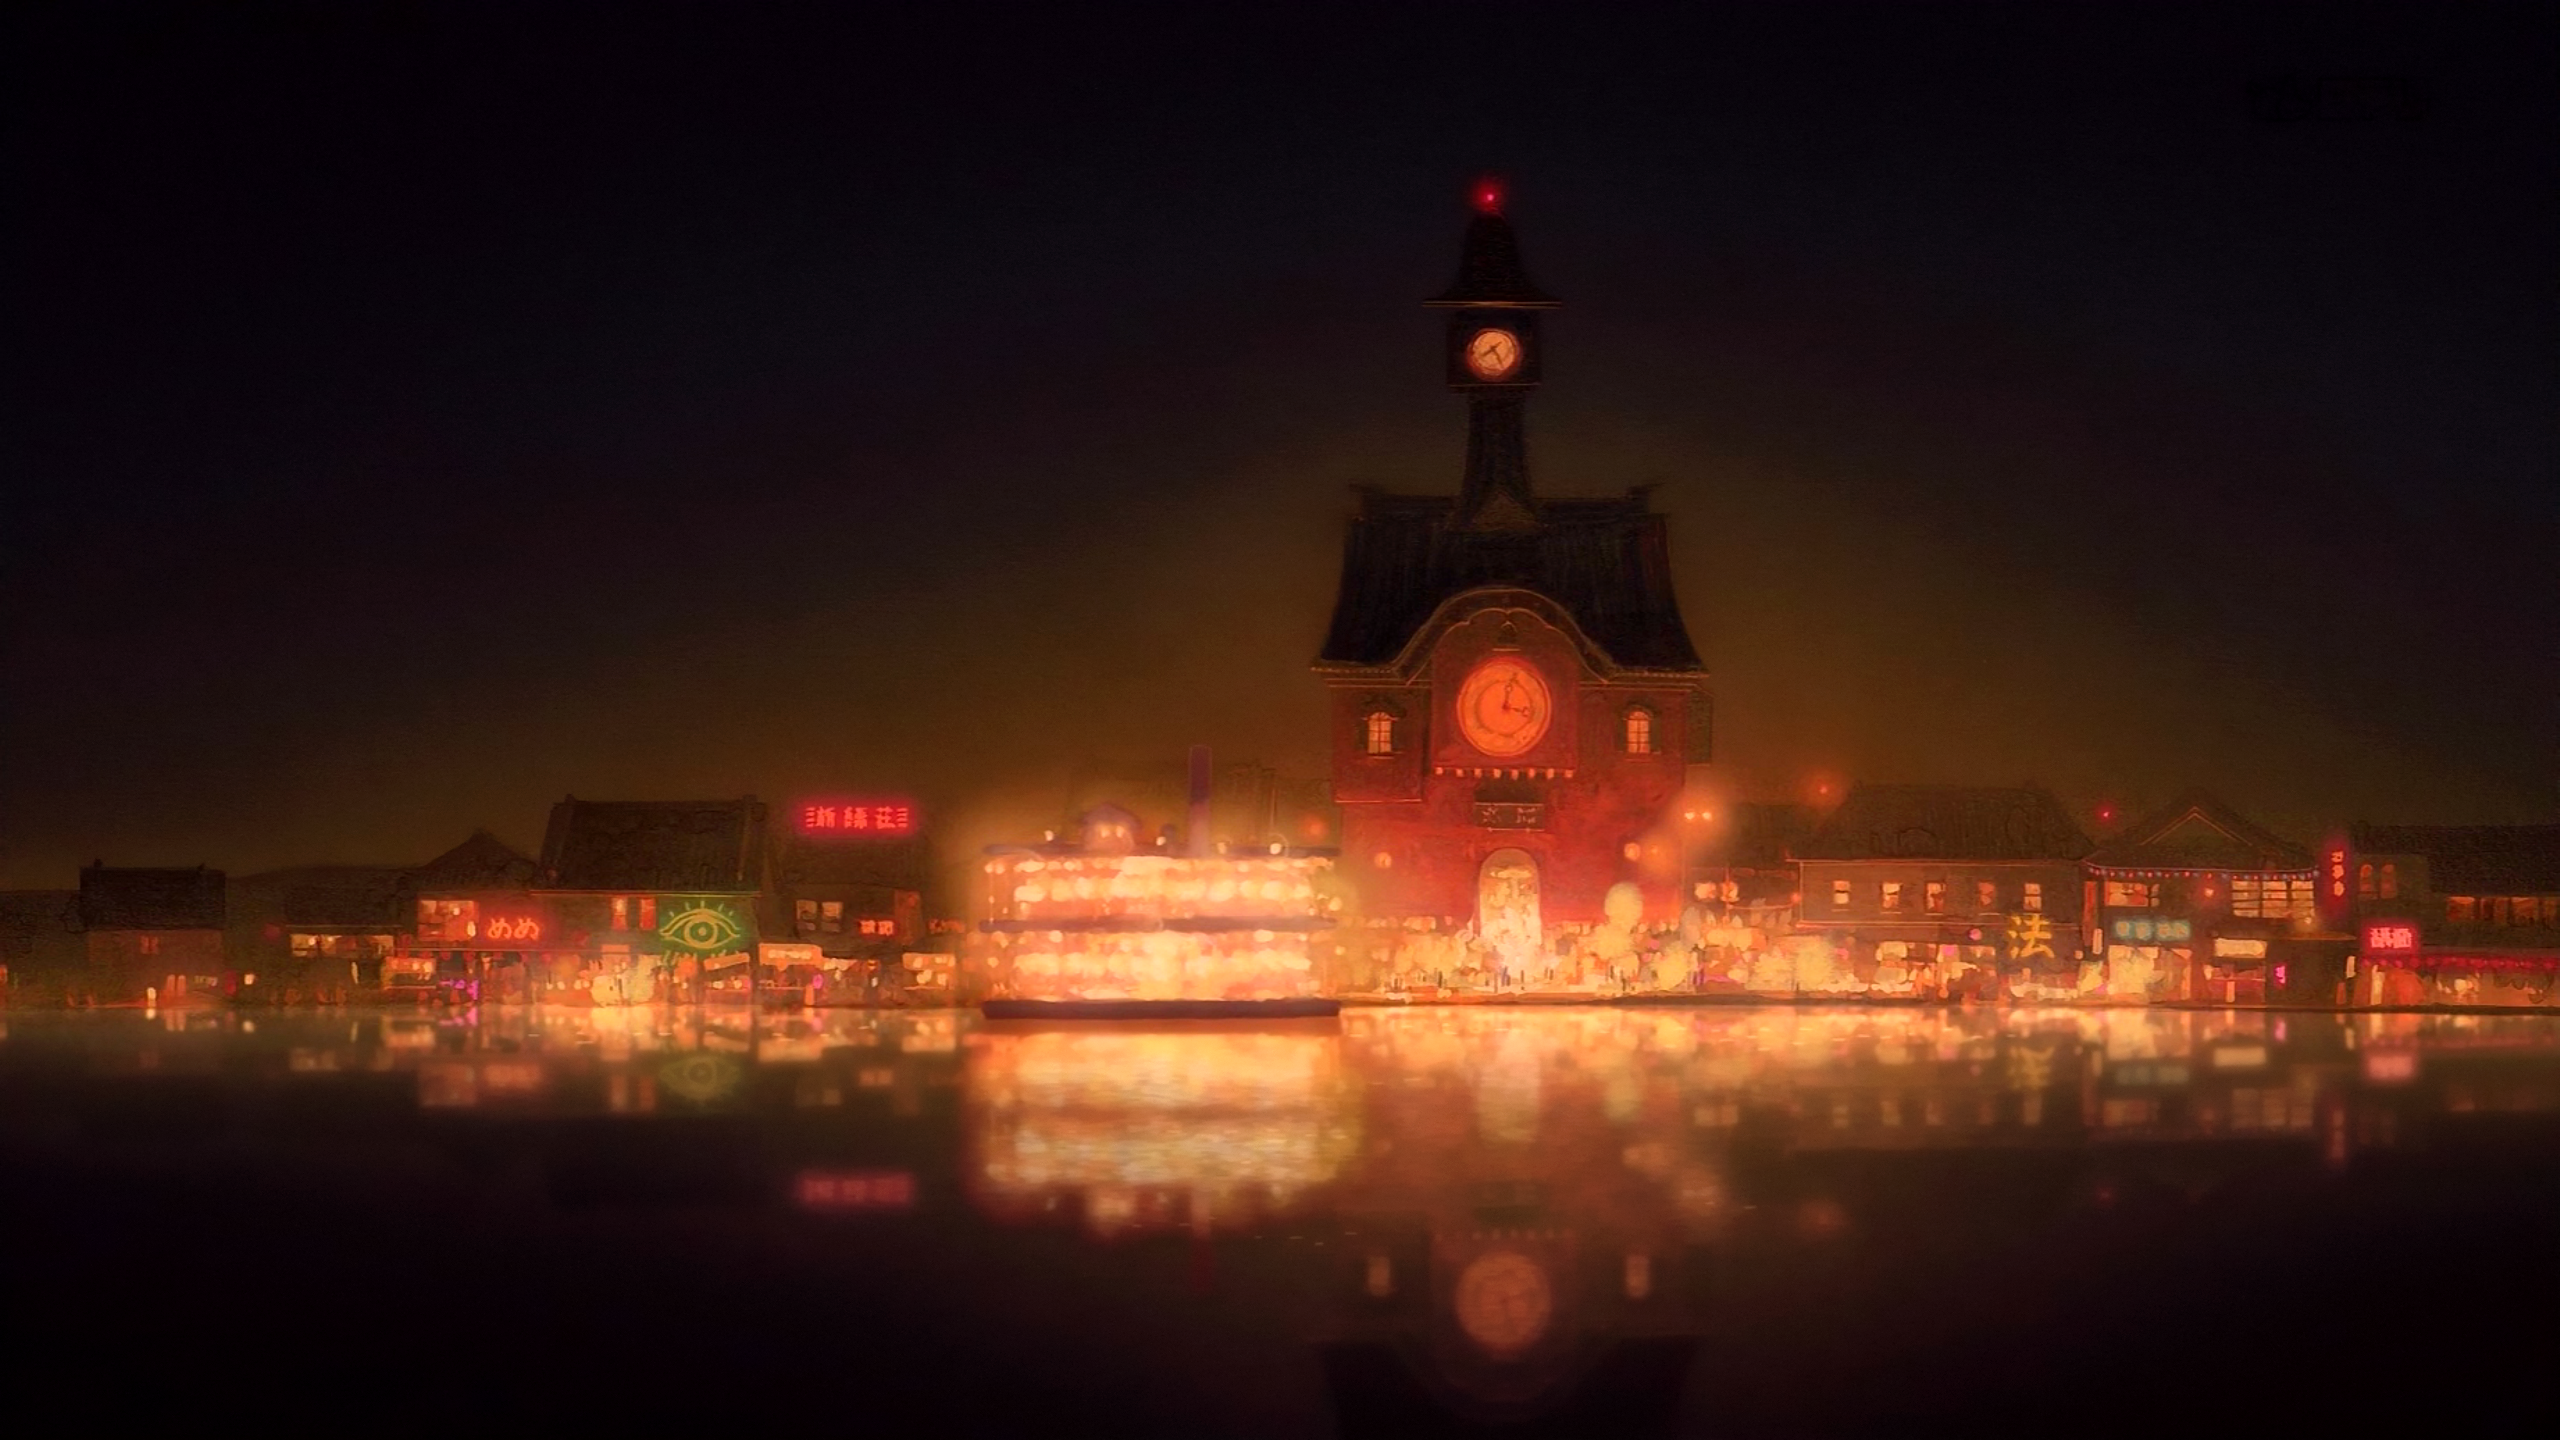 Studio Ghibli Background. Studio ghibli background